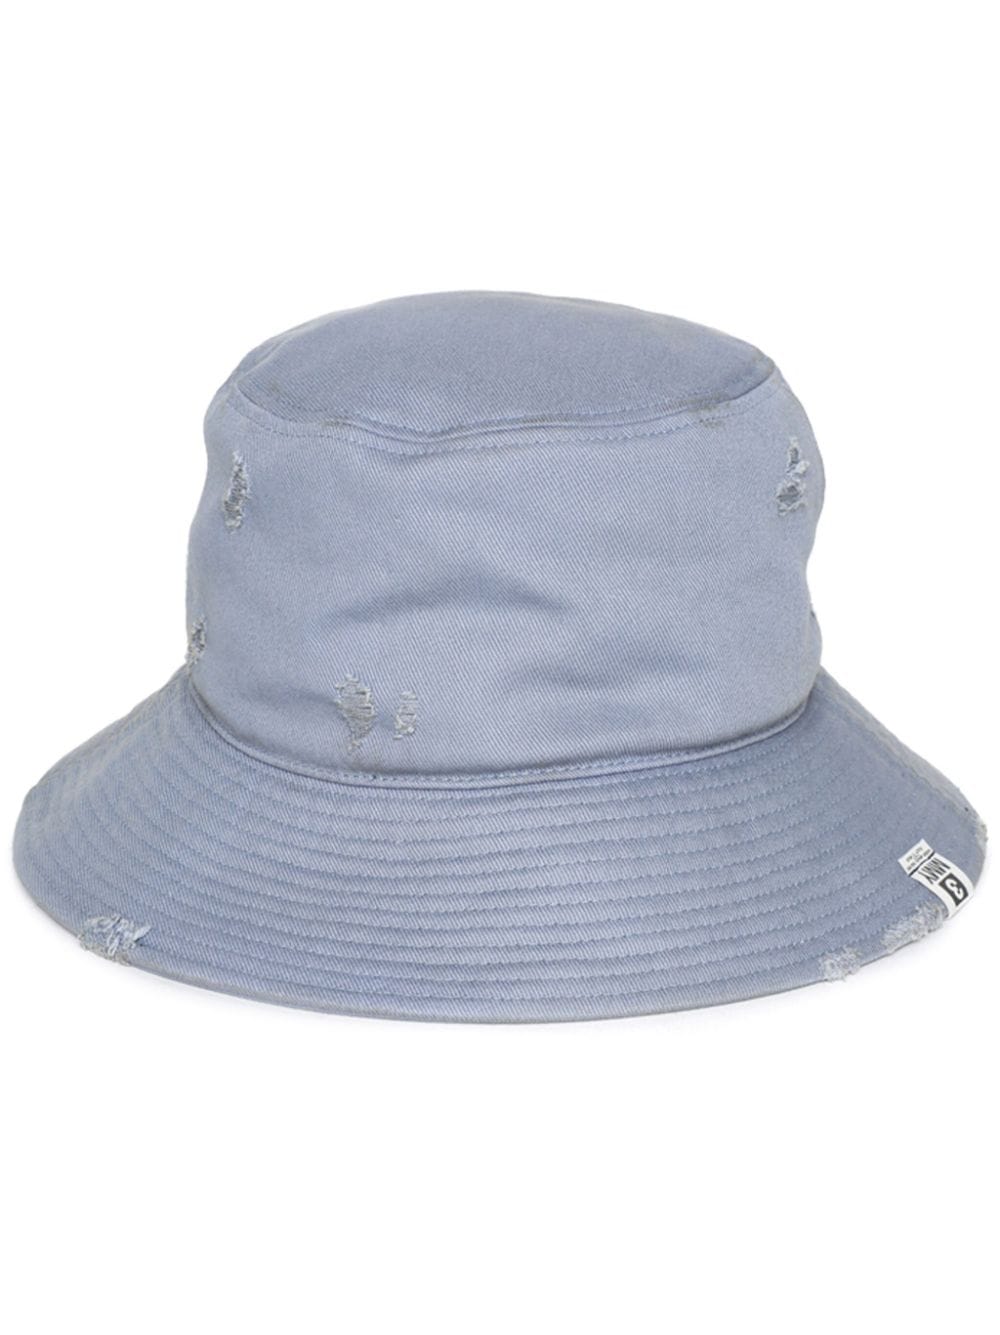 Maison MIHARA YASUHIRO distressed-effect cotton bucket hat - Blau von Maison MIHARA YASUHIRO